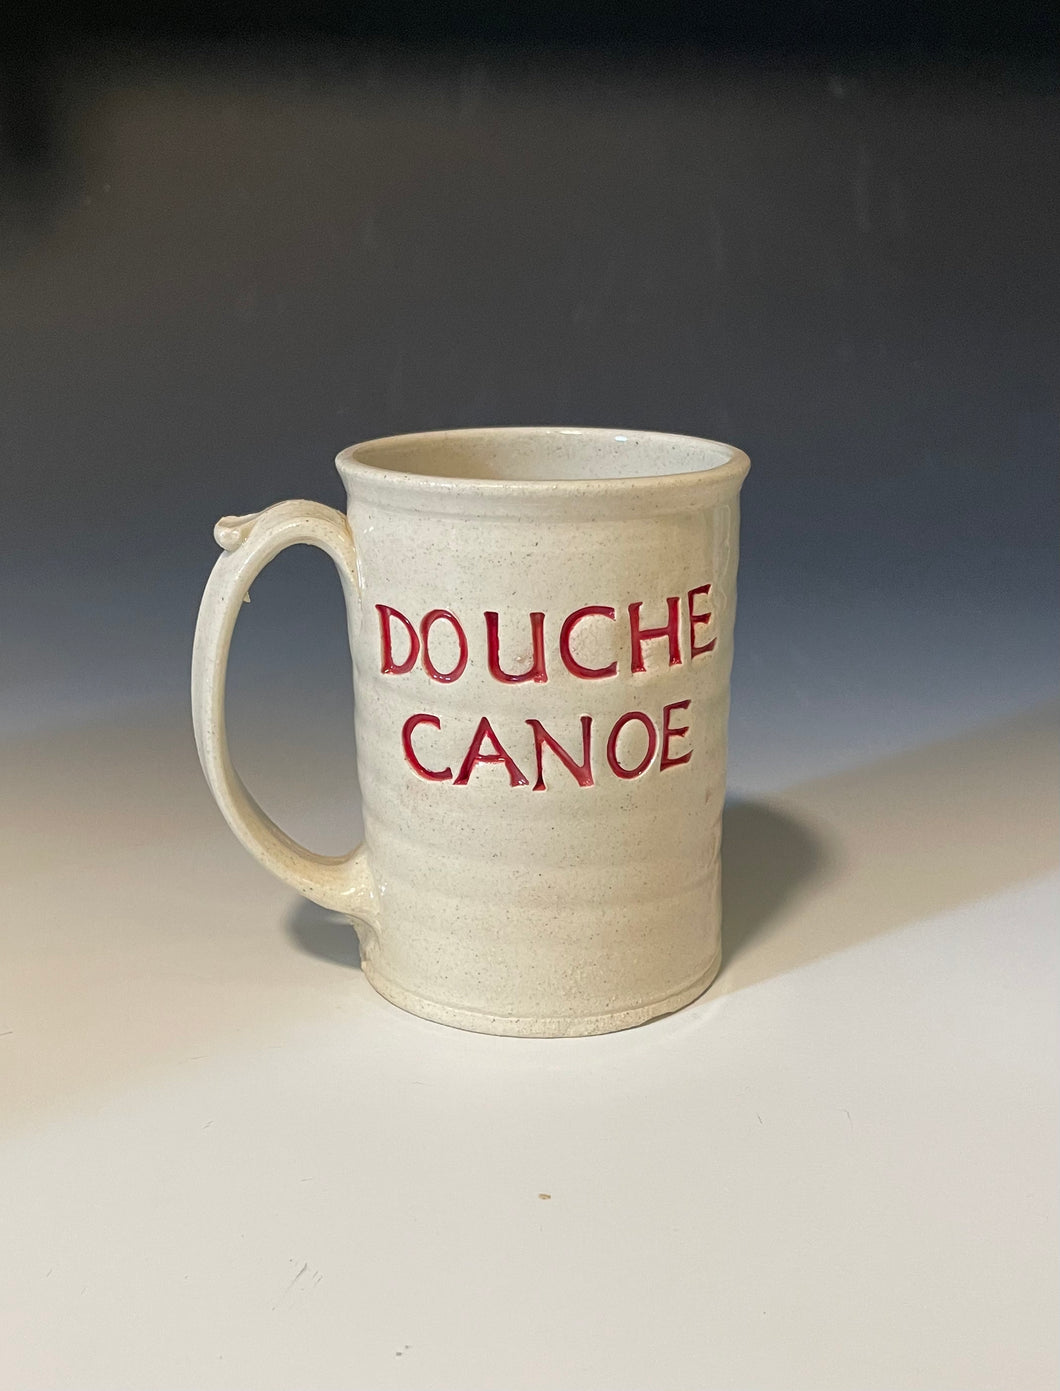 16oz Douche Canoe Mug